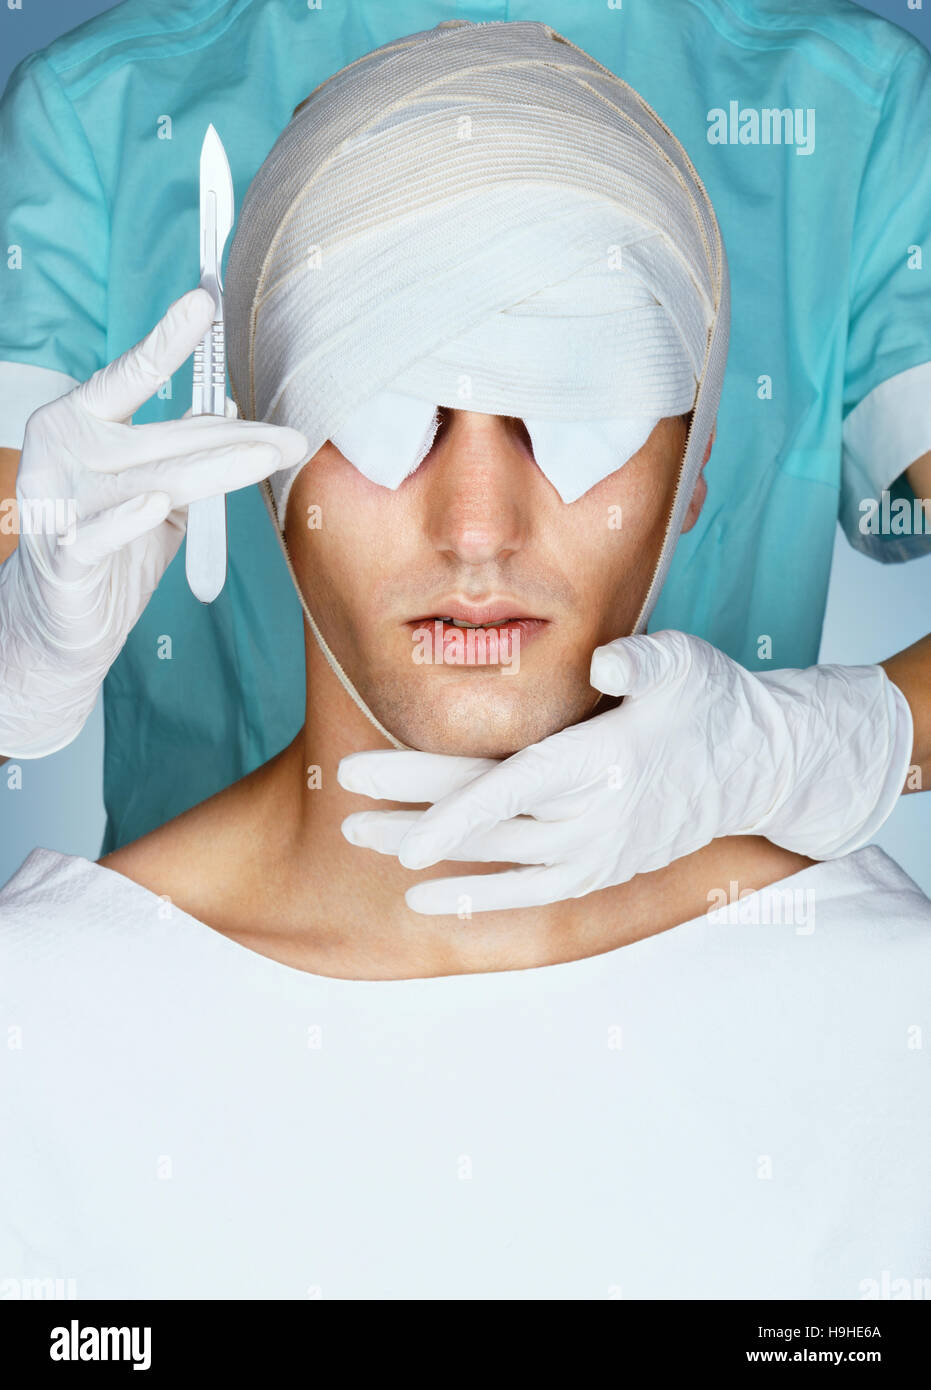 Patienten mit medizinischen Bandage auf seine Augen nach Schönheitsoperation. Nahaufnahme von bandagierte Gesicht vor der plastischen Chirurgie. Beauty-Konzept. Stockfoto